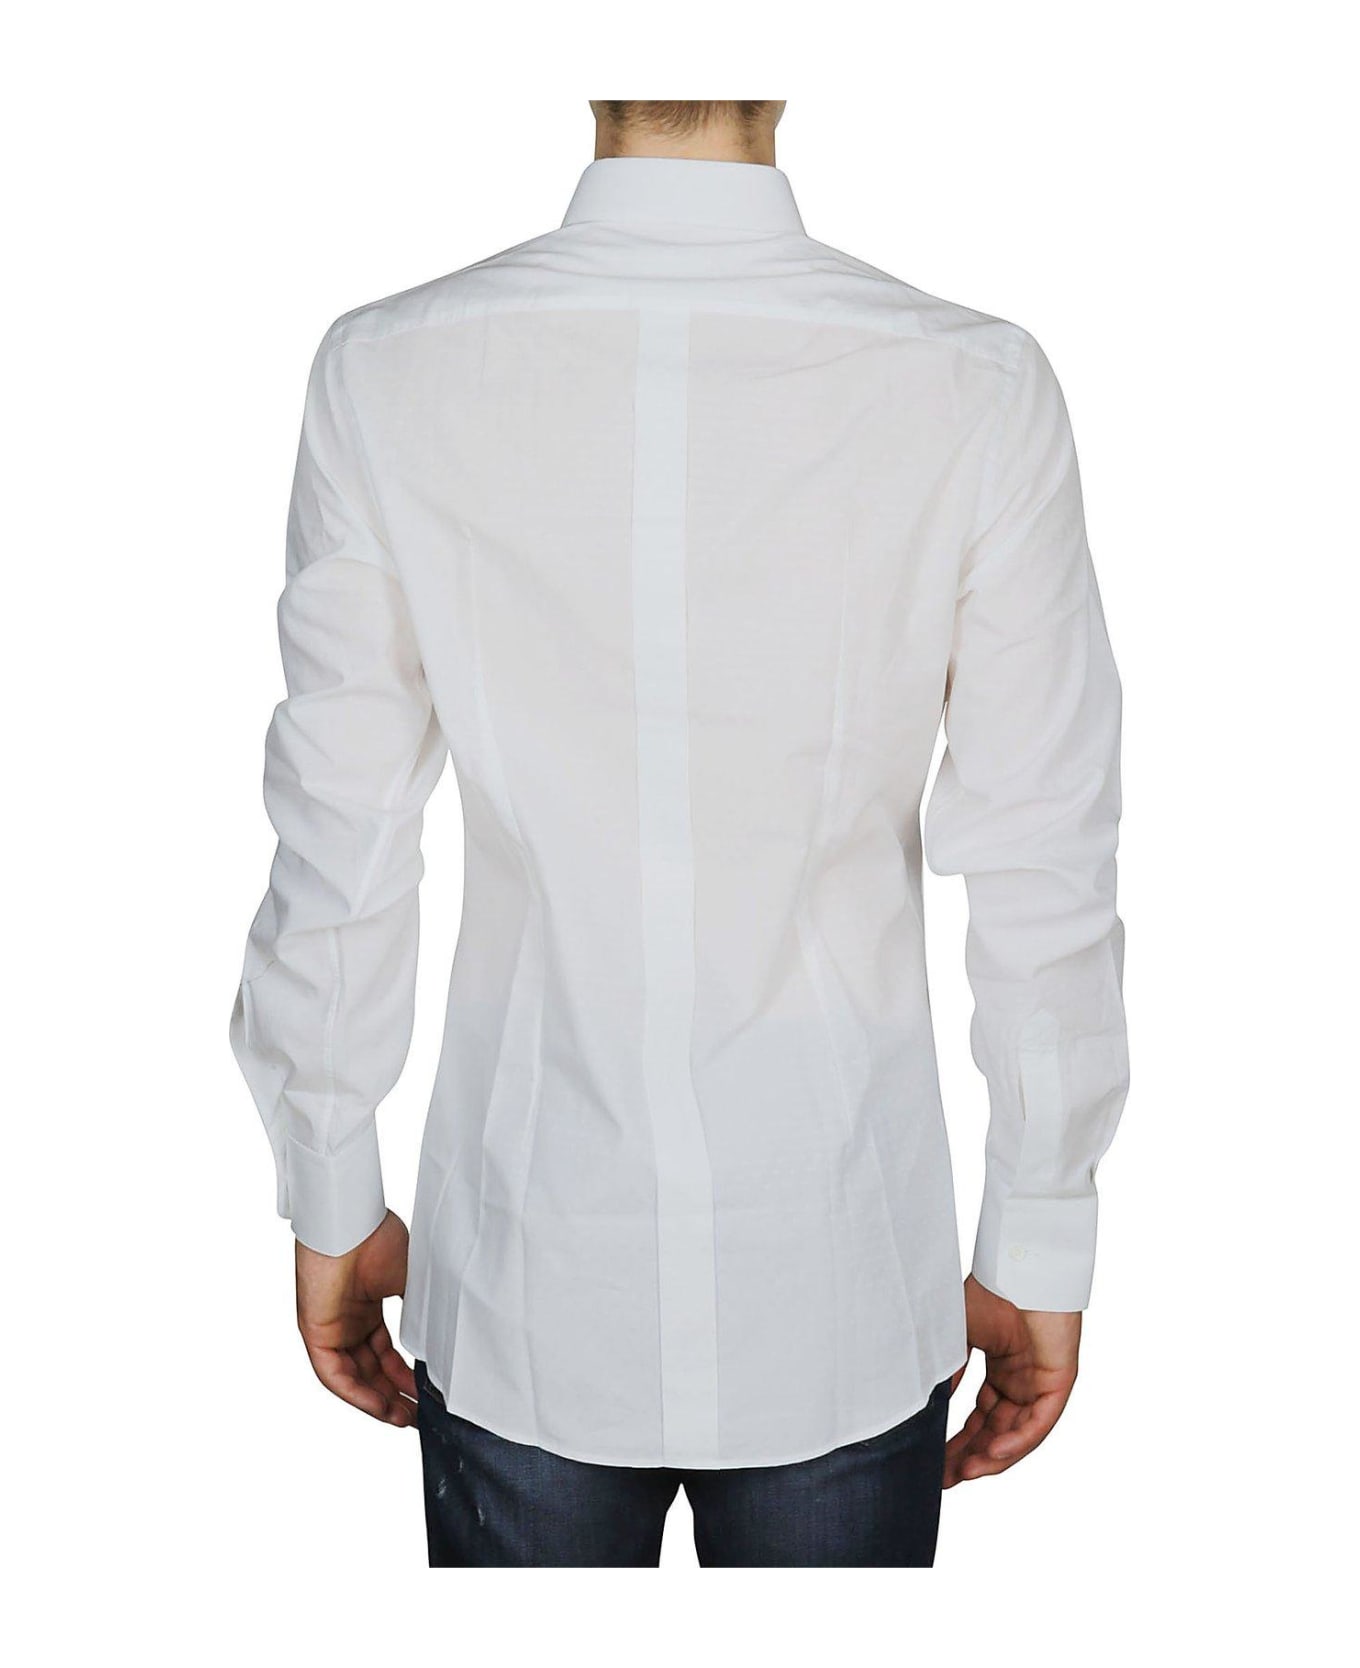 Dolce & Gabbana Jacquard Logo Tailored Shirt - Bianco